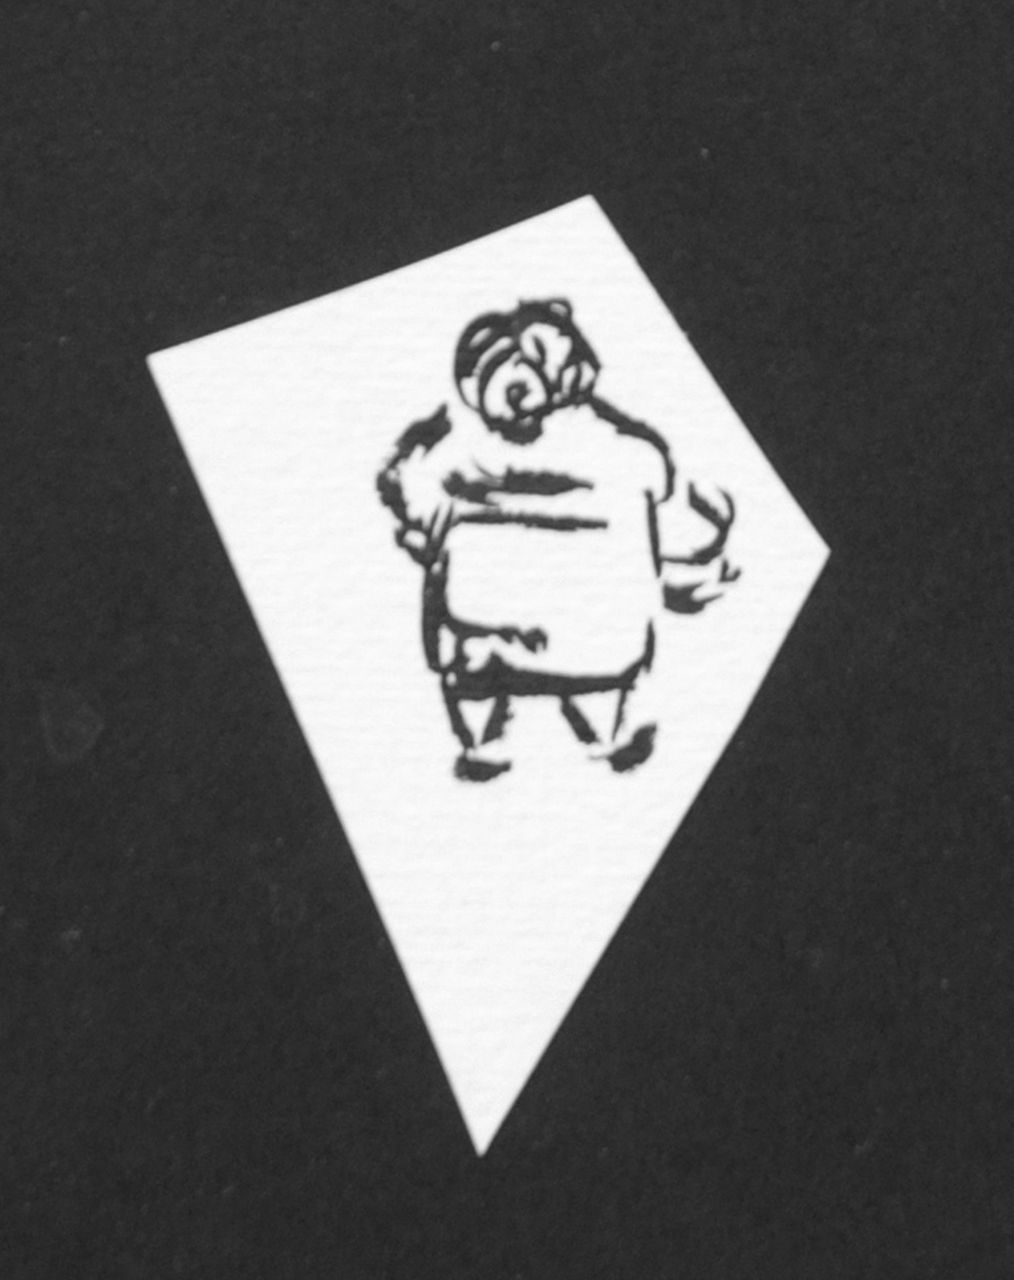 Oranje-Nassau (Prinses Beatrix) B.W.A. van | Beatrix Wilhelmina Armgard van Oranje-Nassau (Prinses Beatrix), Fat woman, Bleistift und Ausziehtusche auf Papier 6,5 x 4,0 cm, executed August 1960